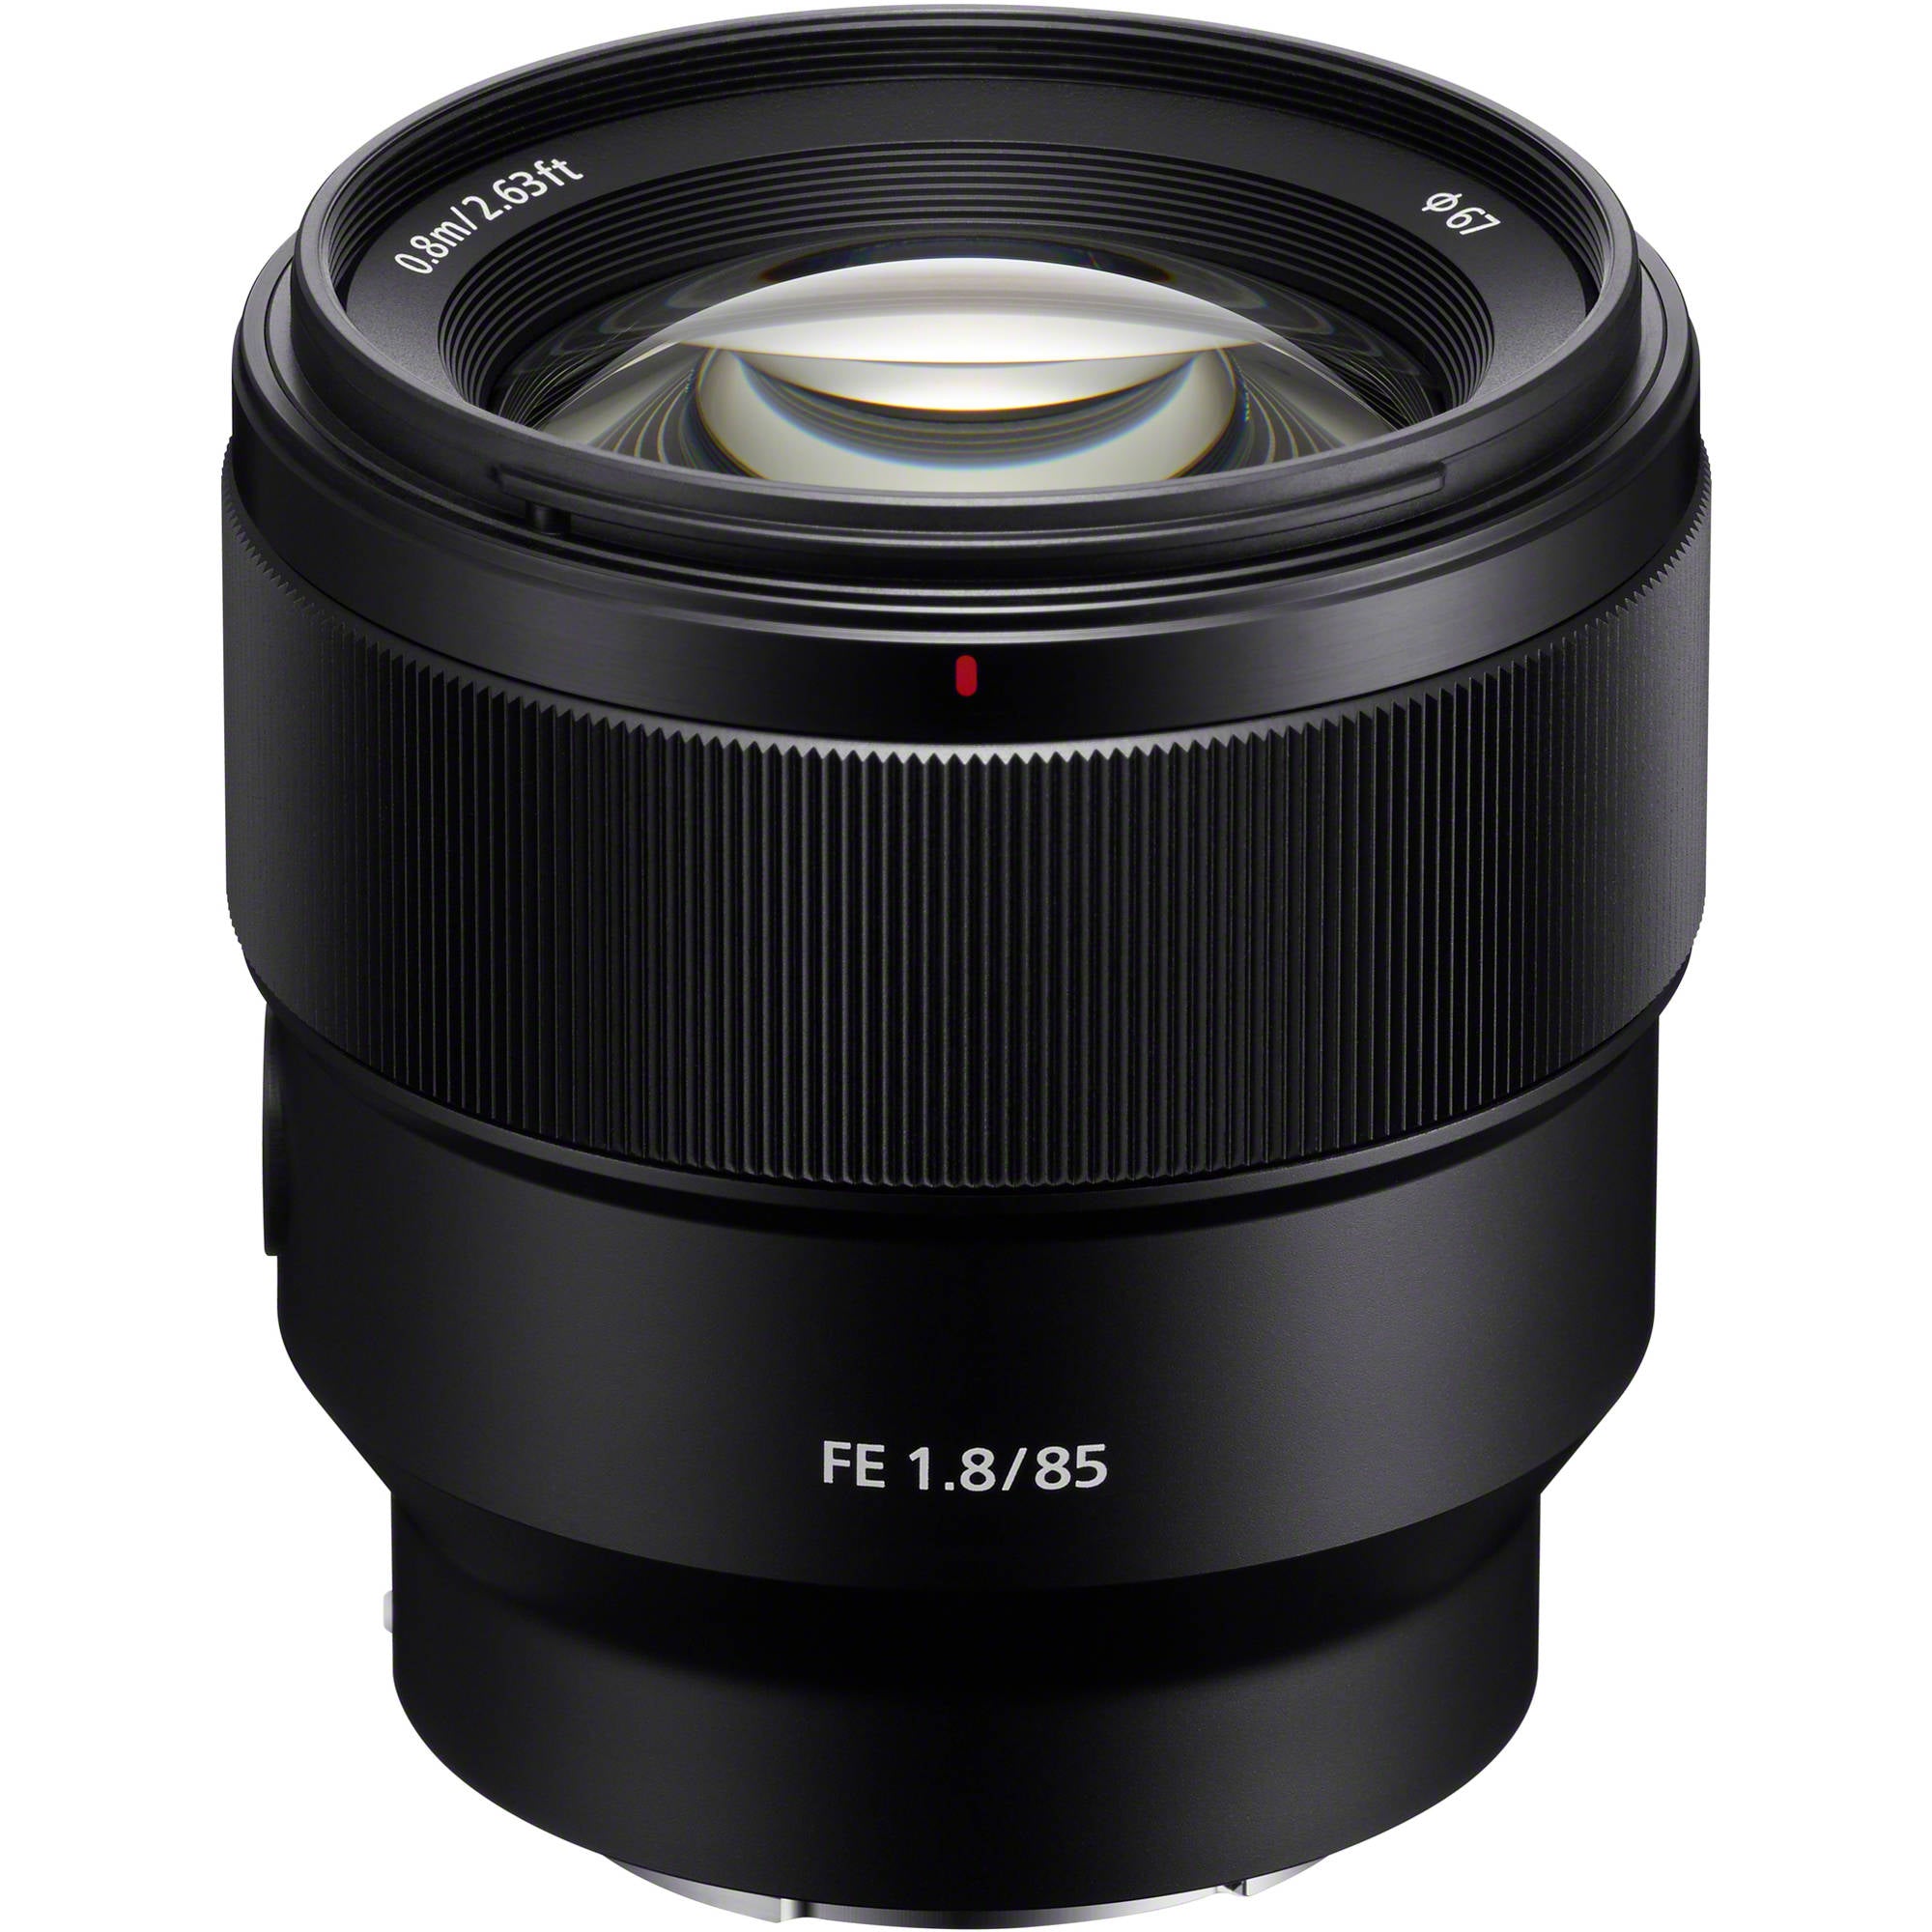 Sony FE 85mm f/1.8 Lens (E Mount Full Frame) Sony Lens - Mirrorless Fixed Focal Length